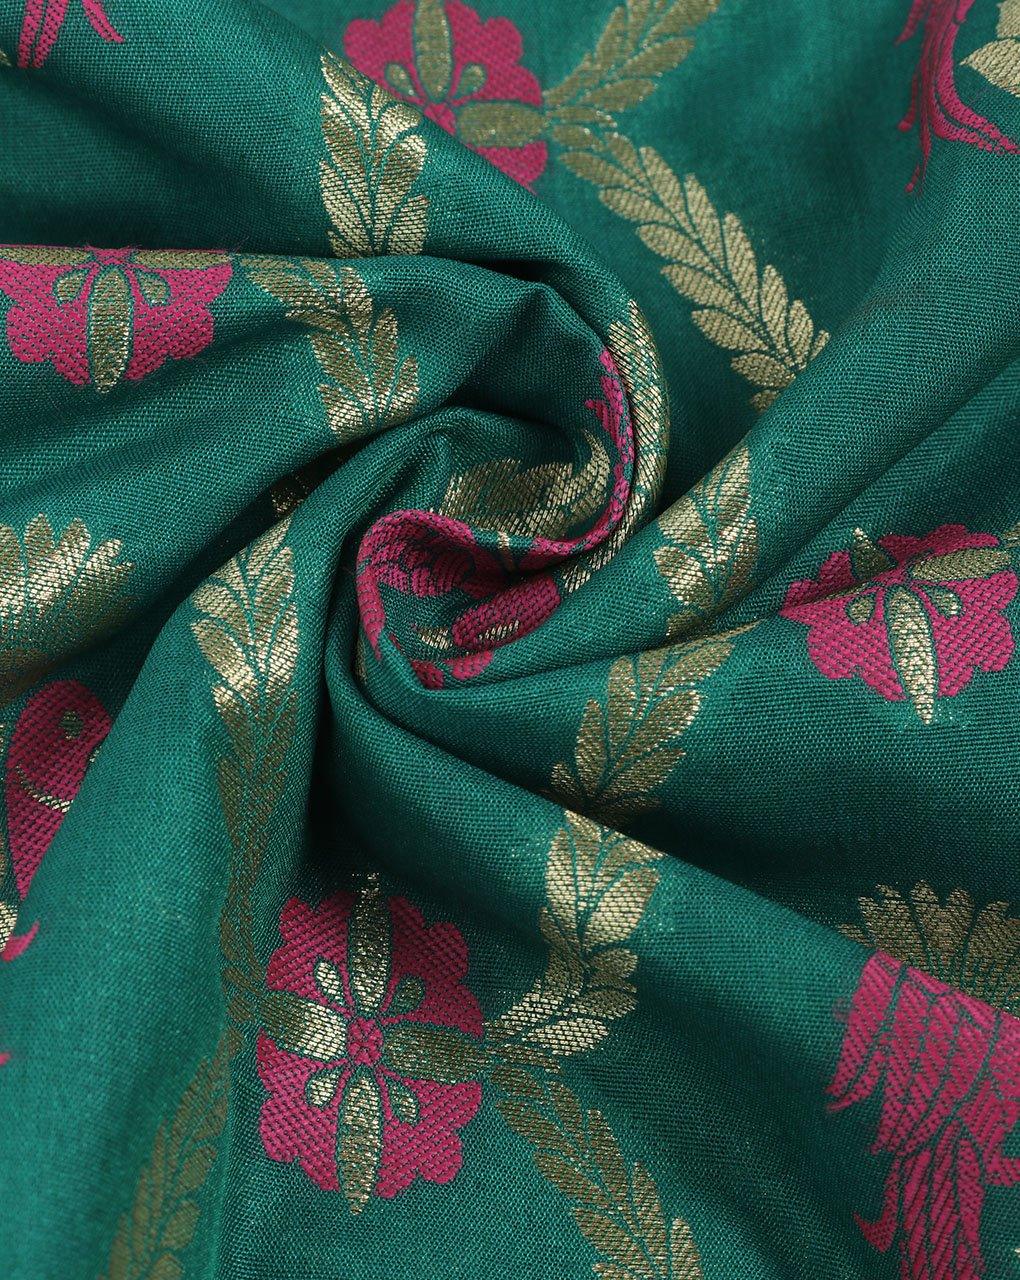 ( Pre-Cut 1.5 MTR ) Green & Gold Creature Print Banarasi Zari Jacquard Taffeta Silk Fabric - Fabriclore.com